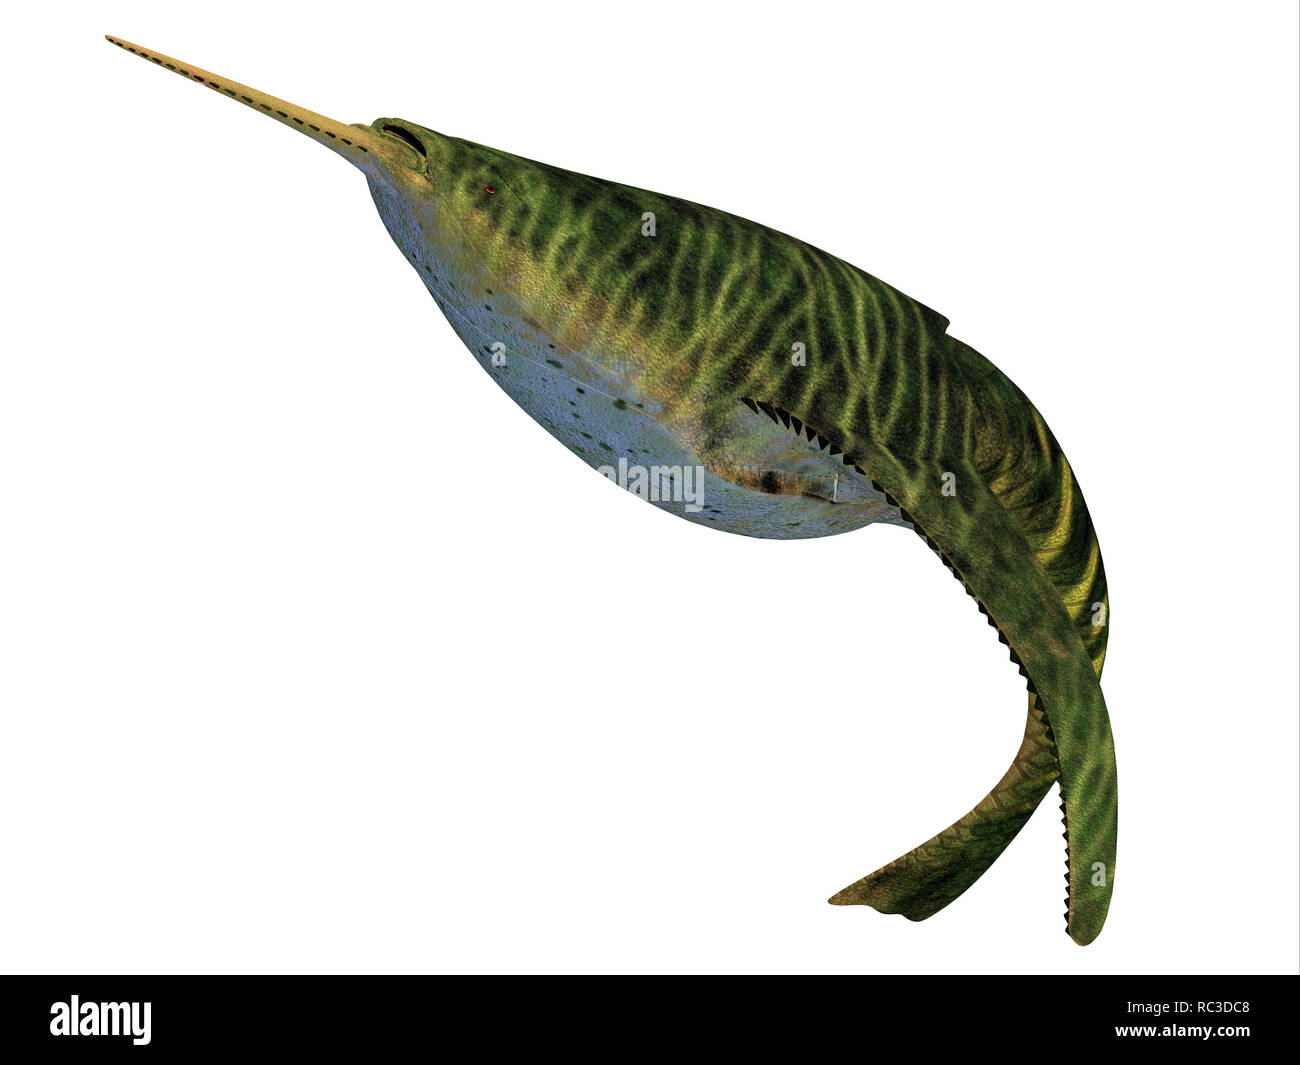 Doryaspis pesce - Doryaspis è un primitivo estinto jawless pesci che vivevano nei mari degli inizi del Periodo Devoniano. Foto Stock